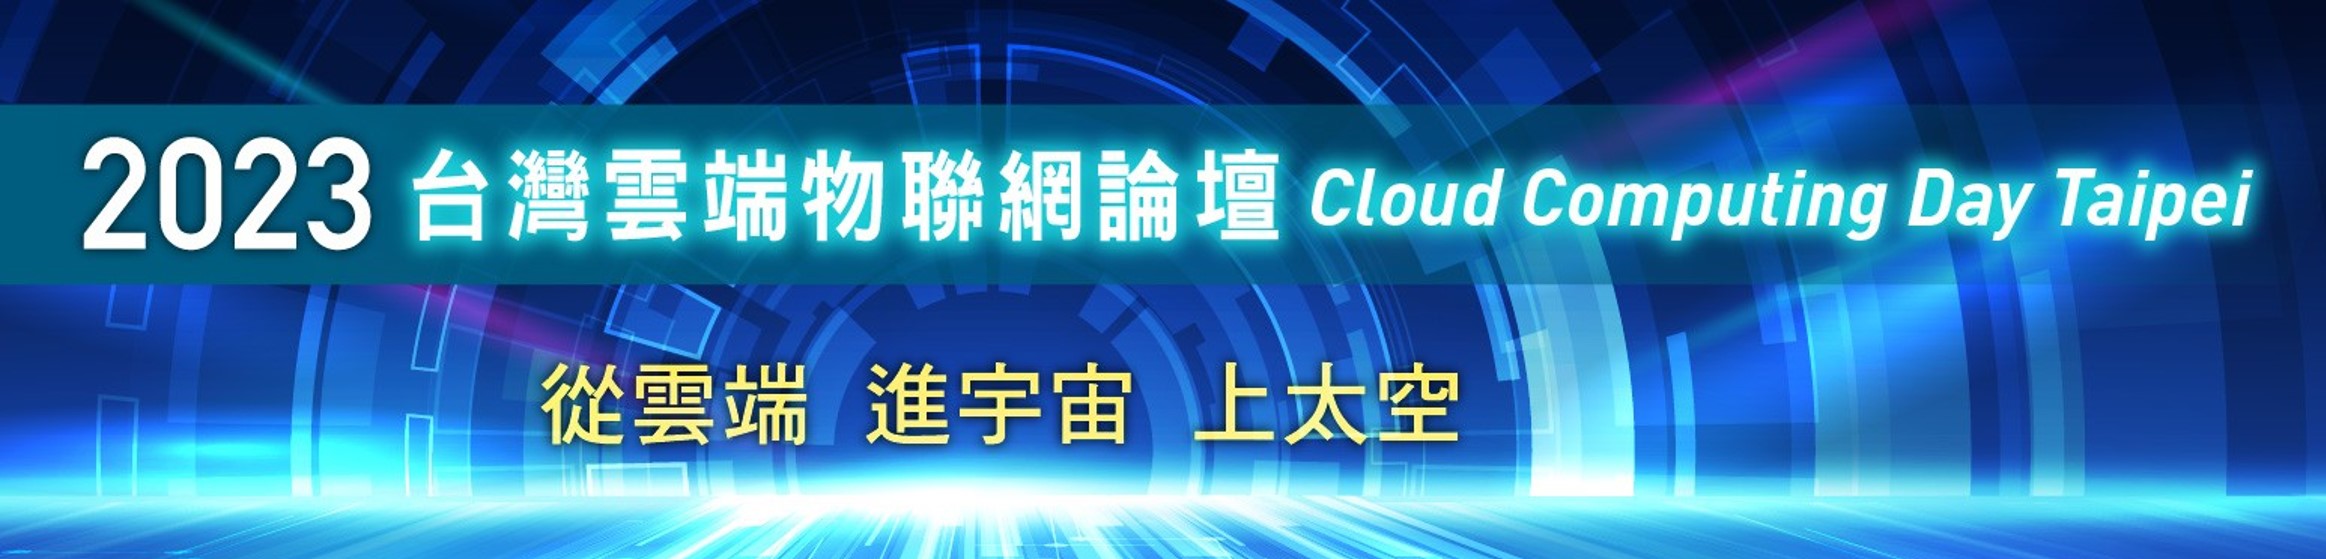 [活動轉知] 2023台灣雲端物聯網論壇Cloud Computing Day Taipei「從雲端、進宇宙、上太空」